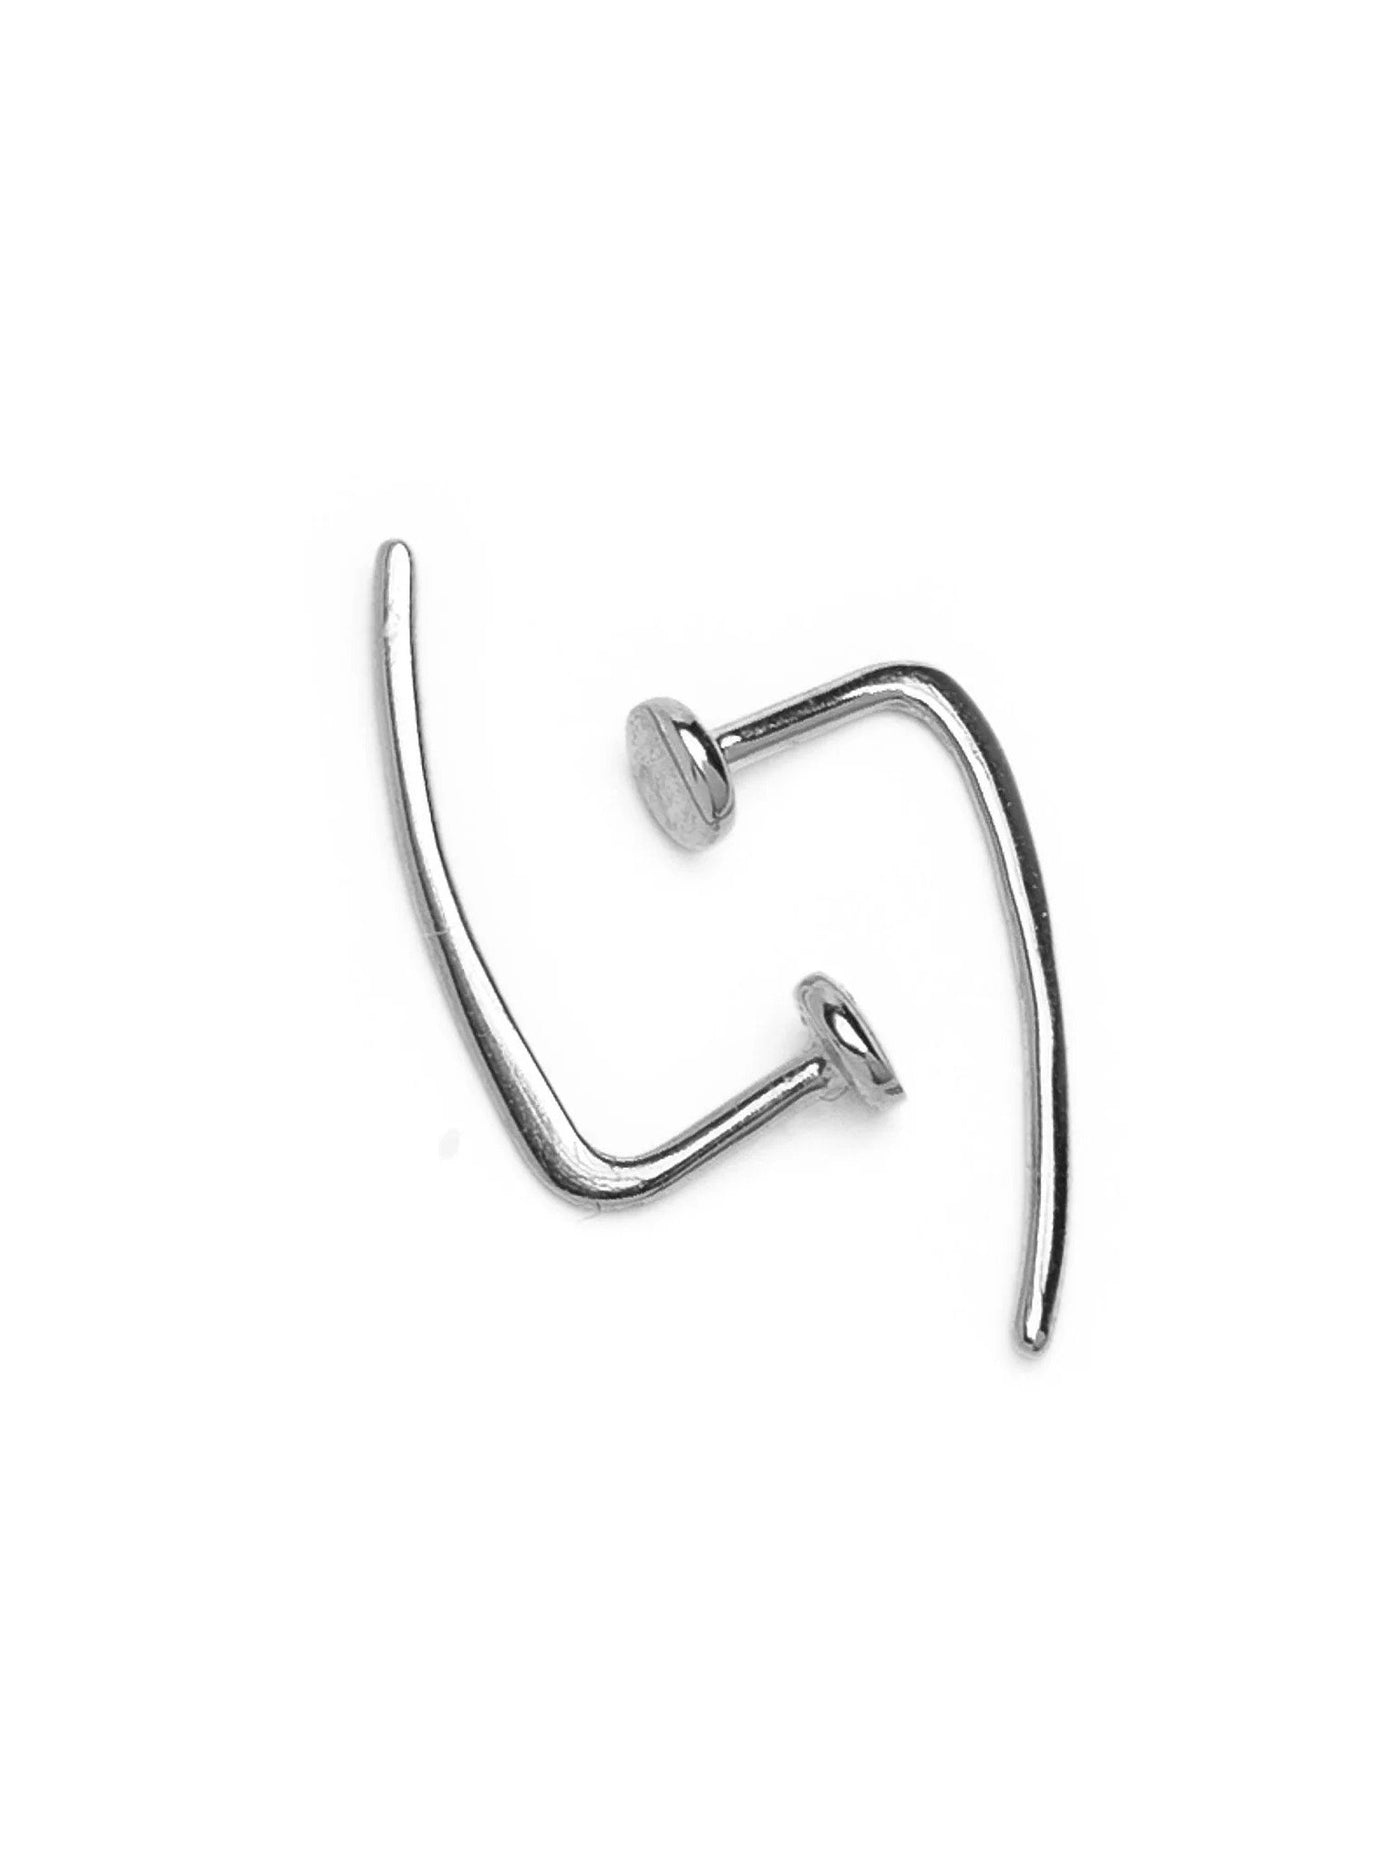 Open Hoop Earrings - 925 Sterling SilverBackUpItemsBlack Friday JewelryLunai Jewelry